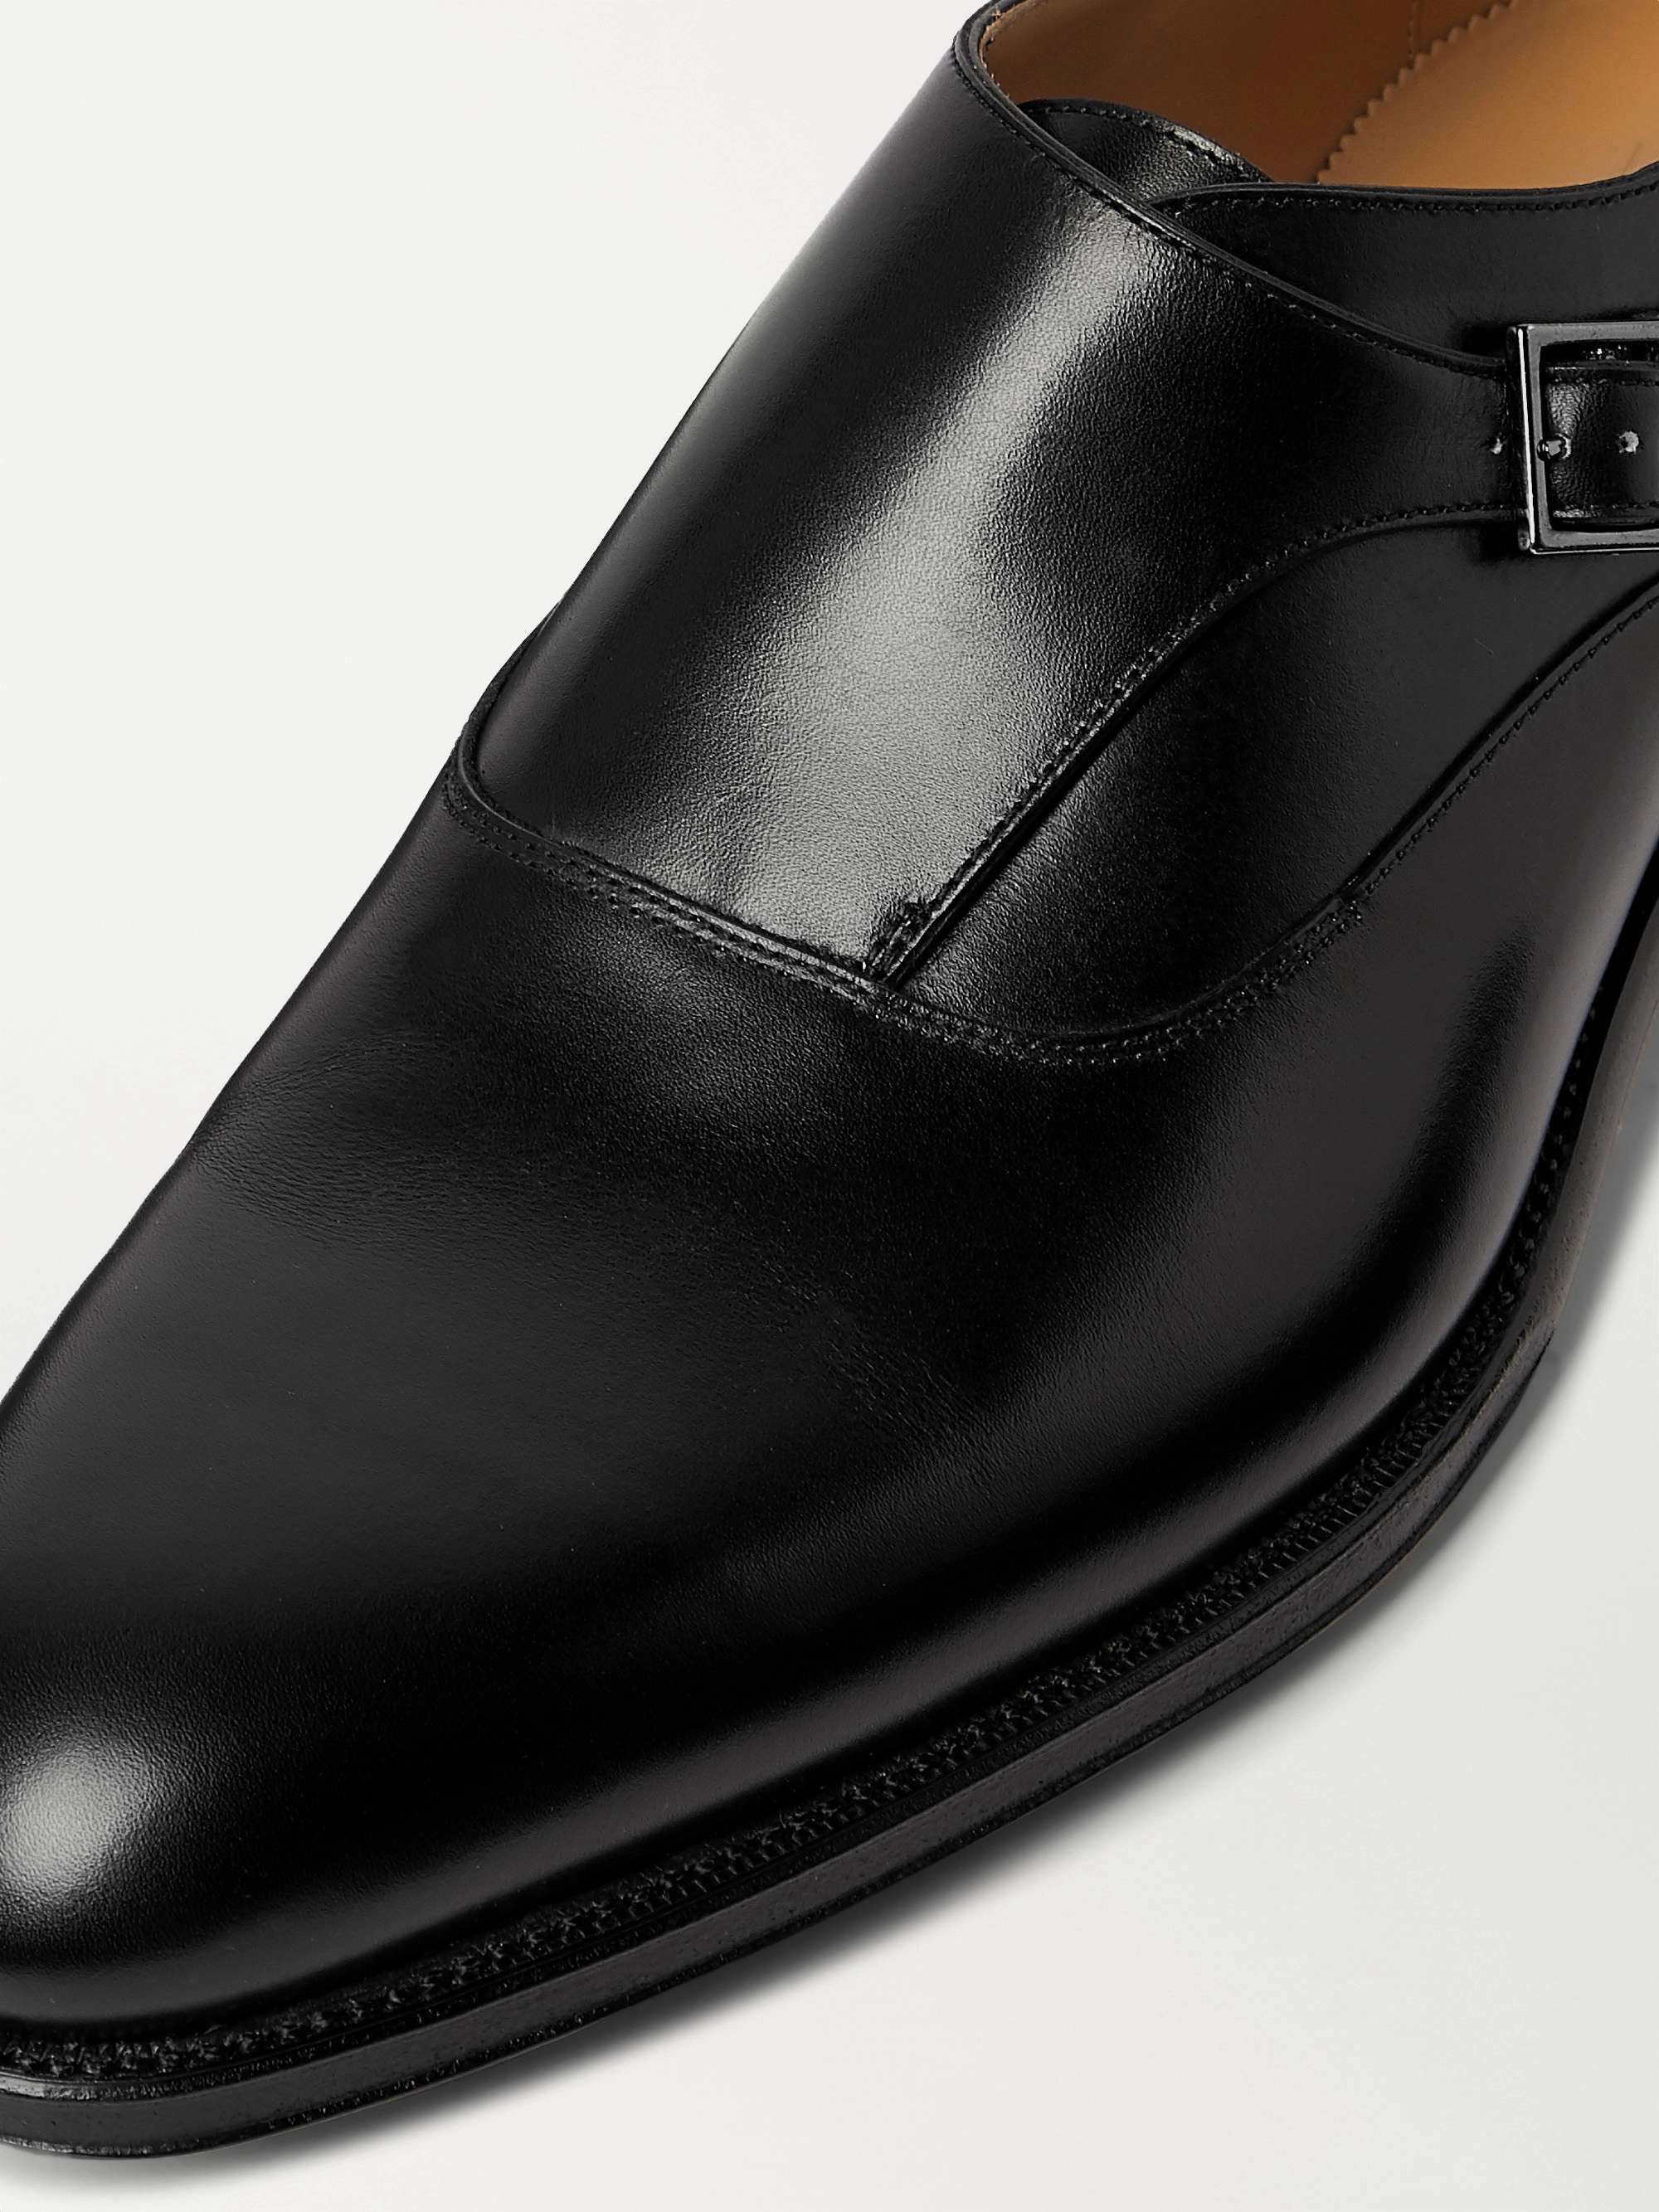 DUNHILL Kensington Leather Monk-Strap Shoes